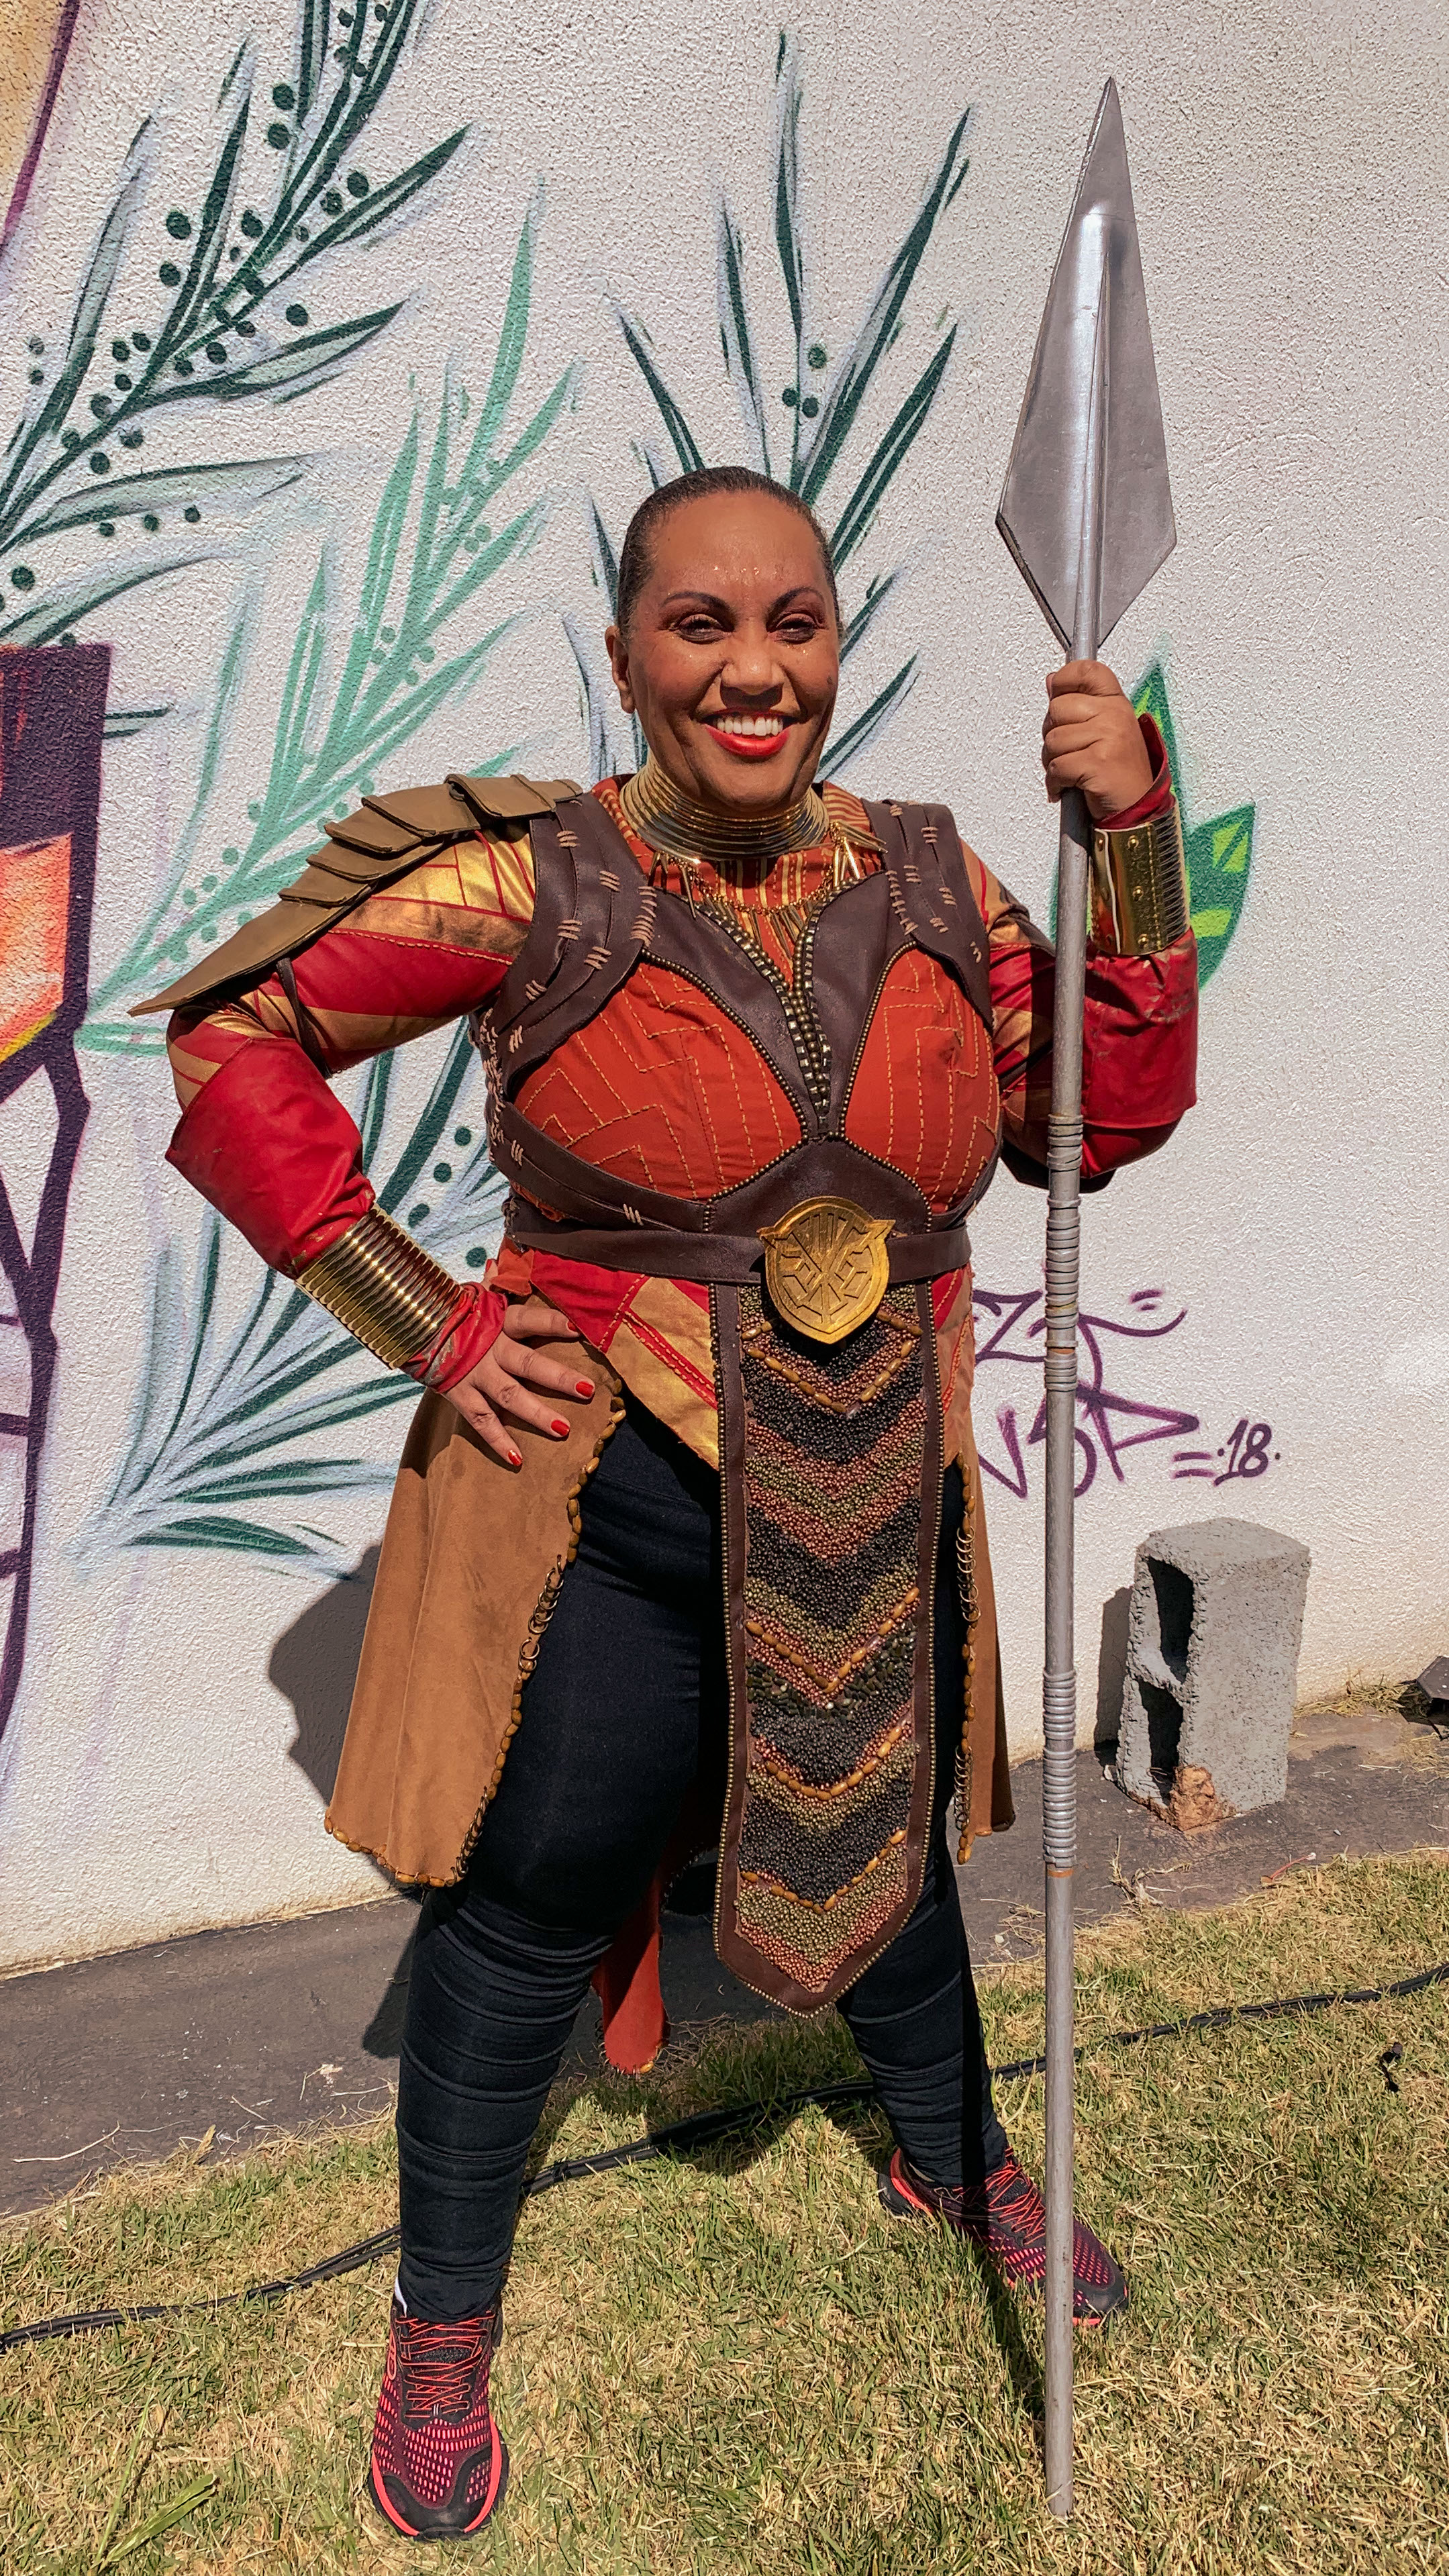 Marcia Alves, 54 anos, em cosplay de Dora Milaje, personagens do filme Pantera Negra (Marvel Studios). Fotos: Bianca Novais.